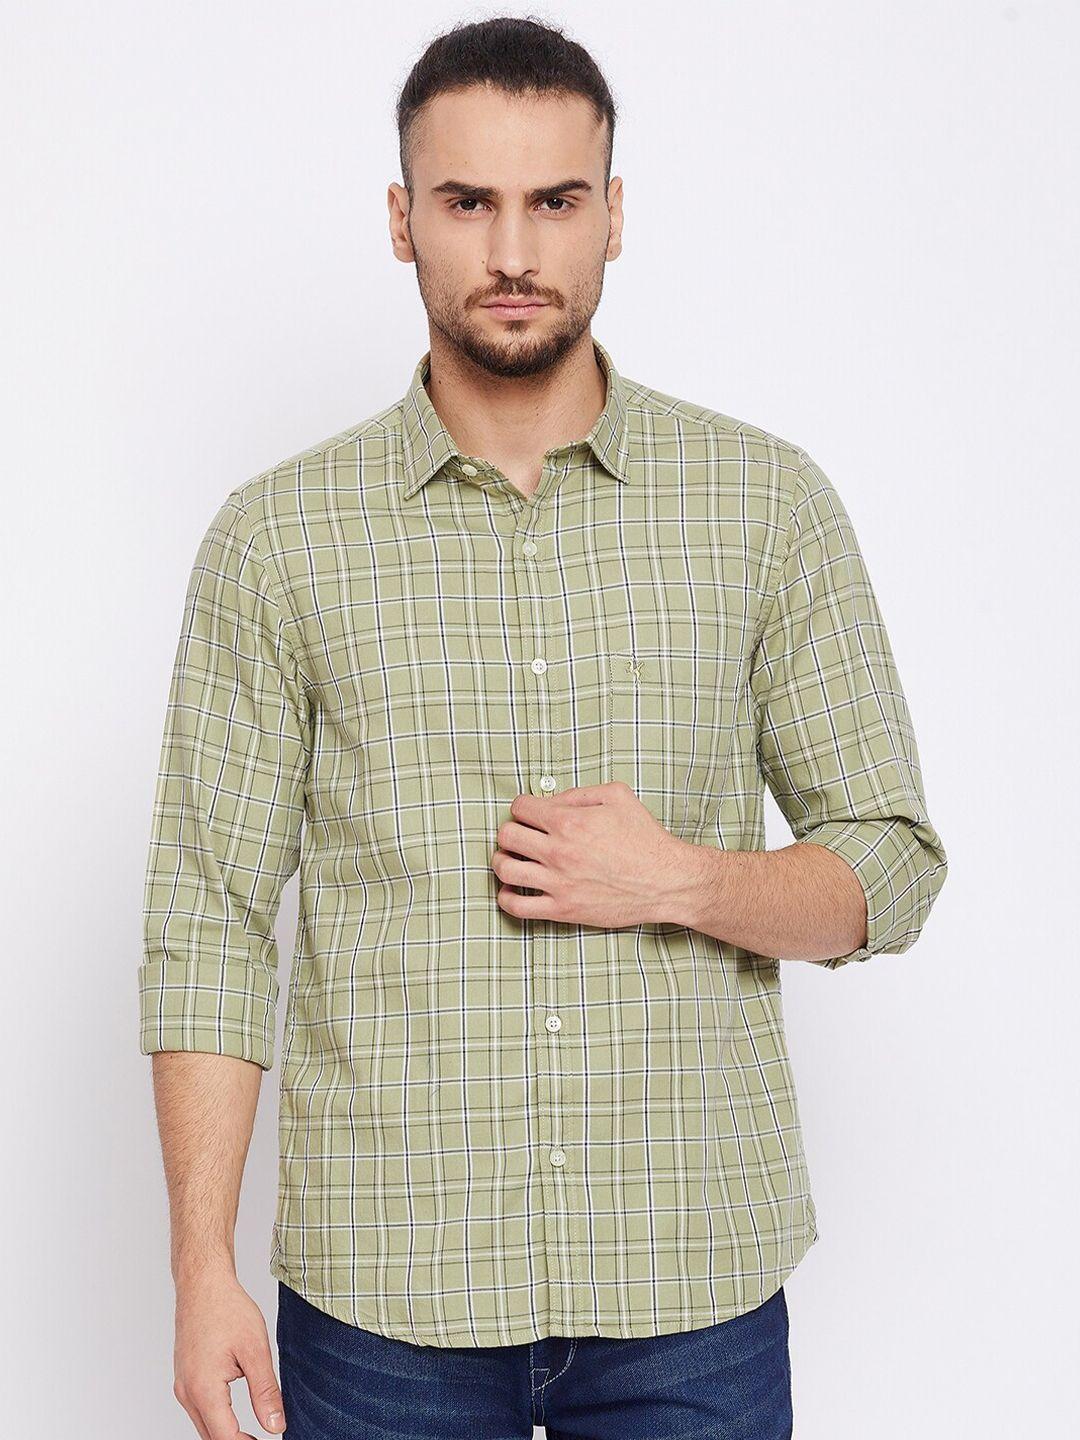 cantabil men green tartan checks opaque checked casual shirt